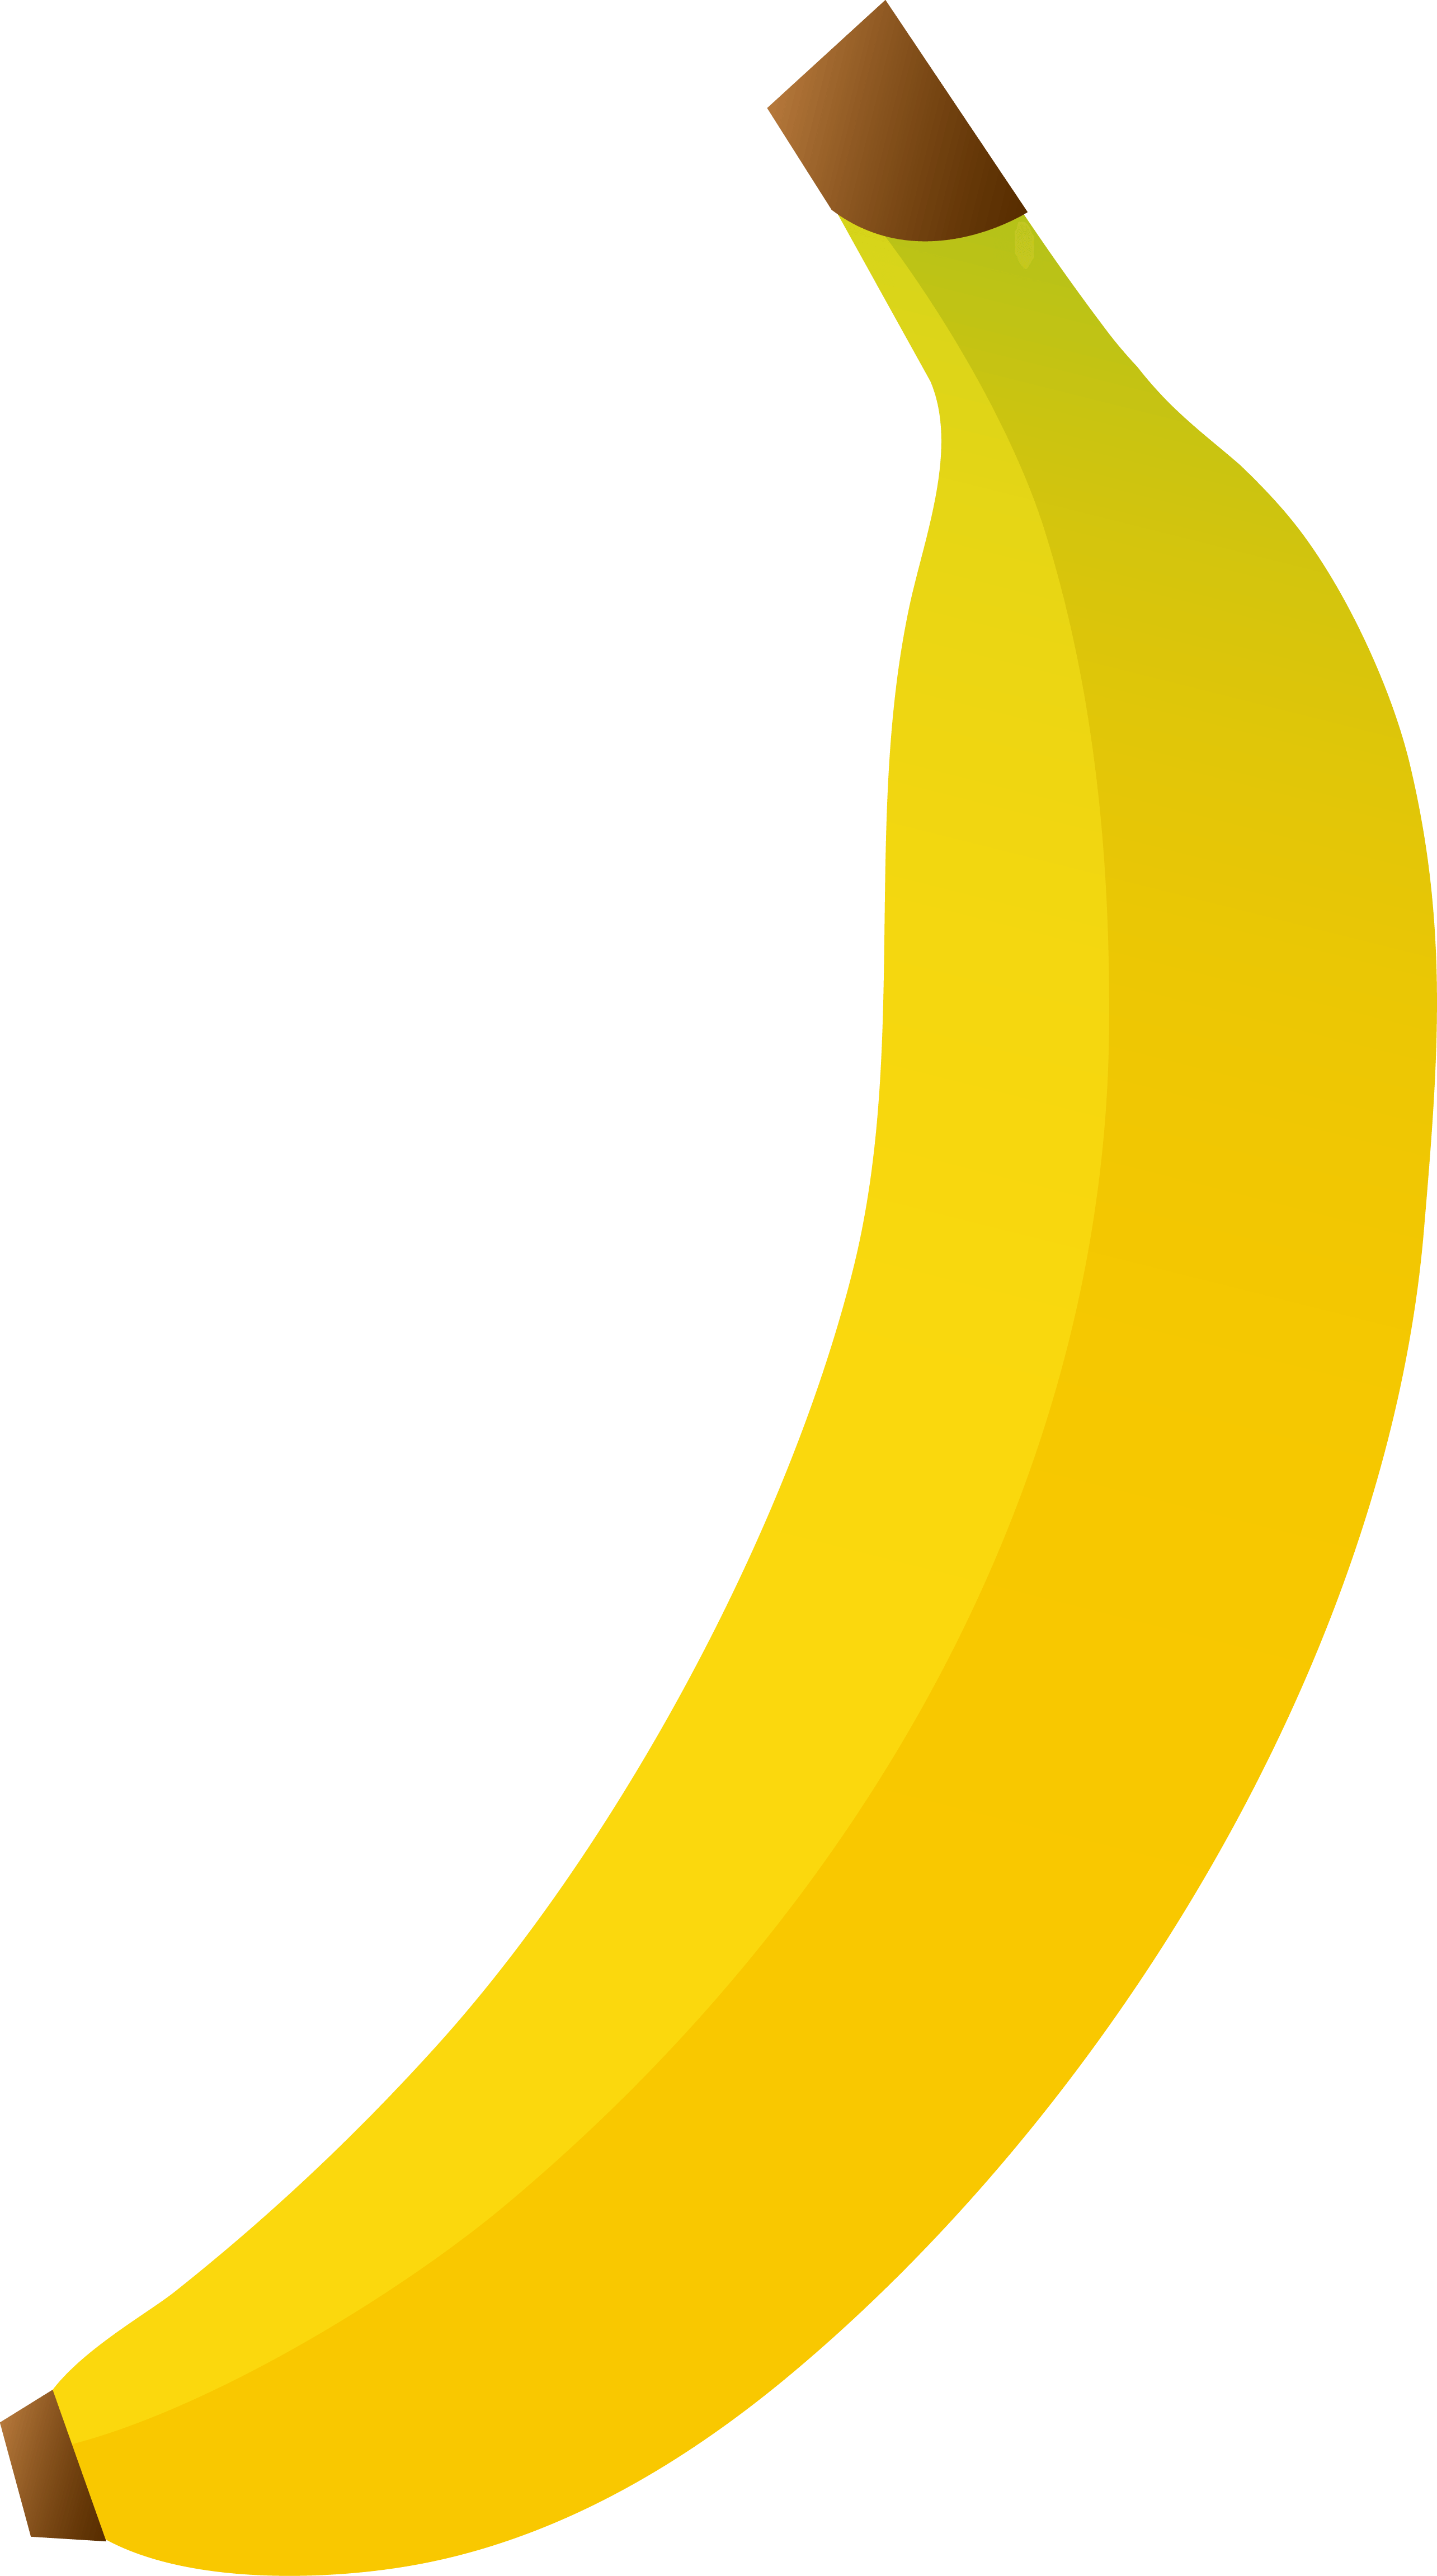 Download Banana Png Image HQ PNG Image | FreePNGImg